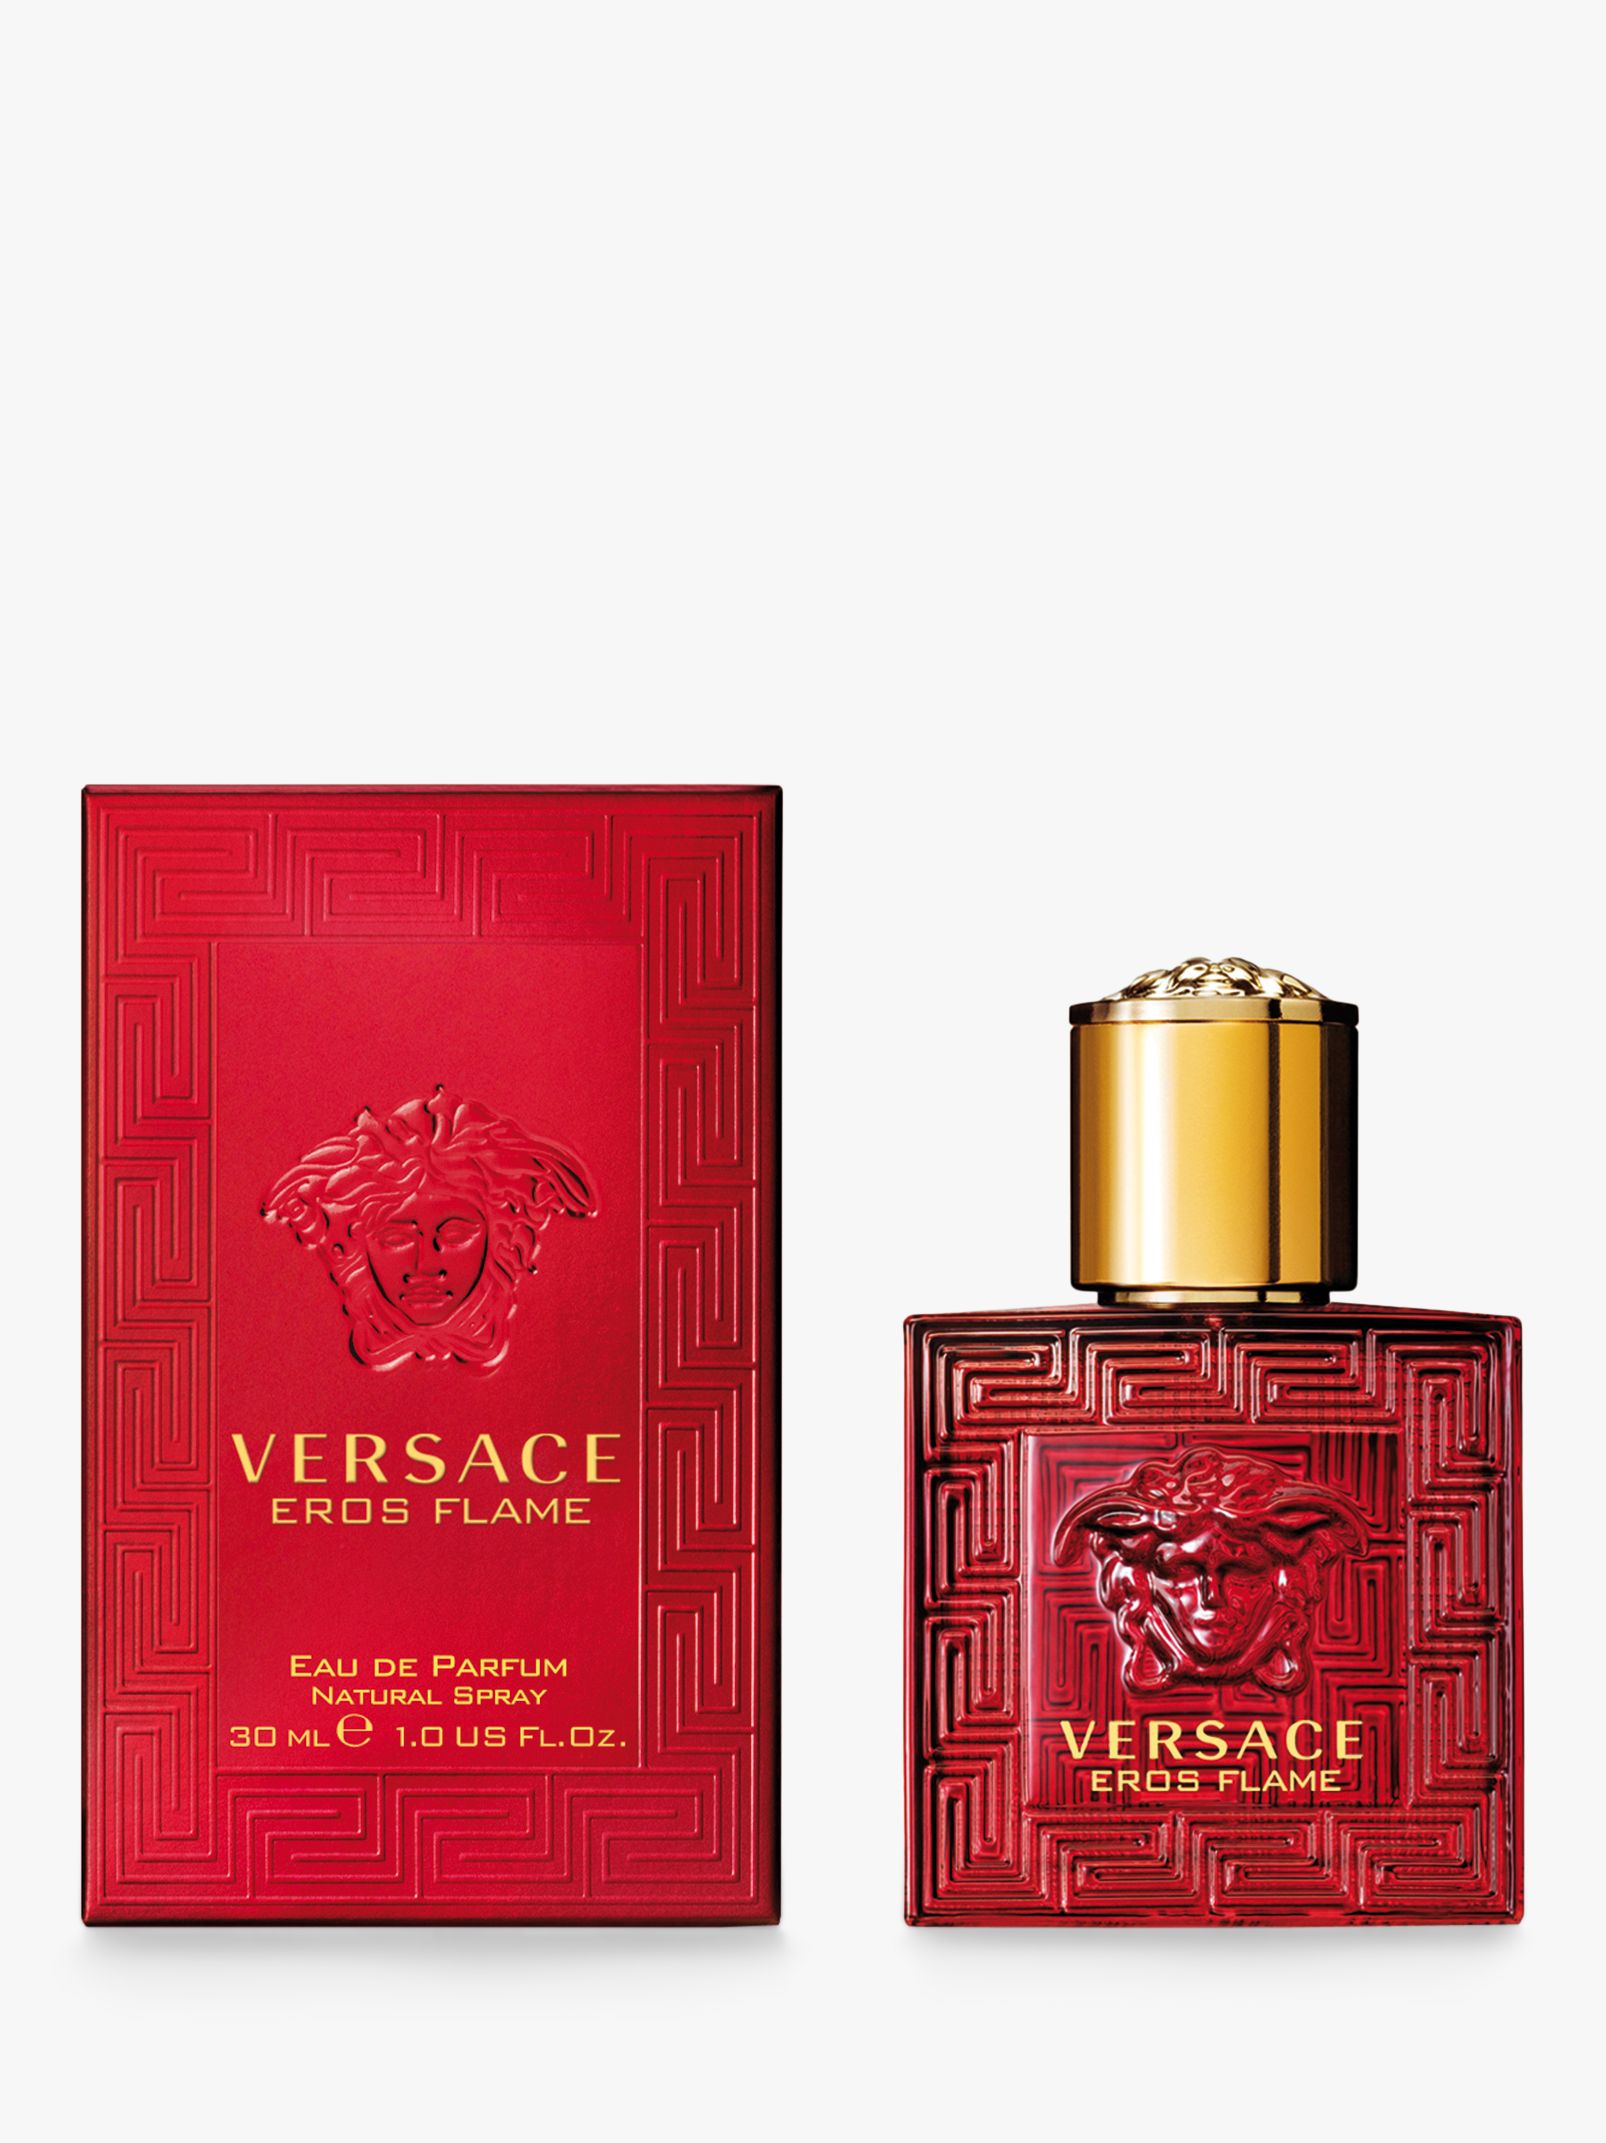 Versace Eros Flame Eau de Parfum at 